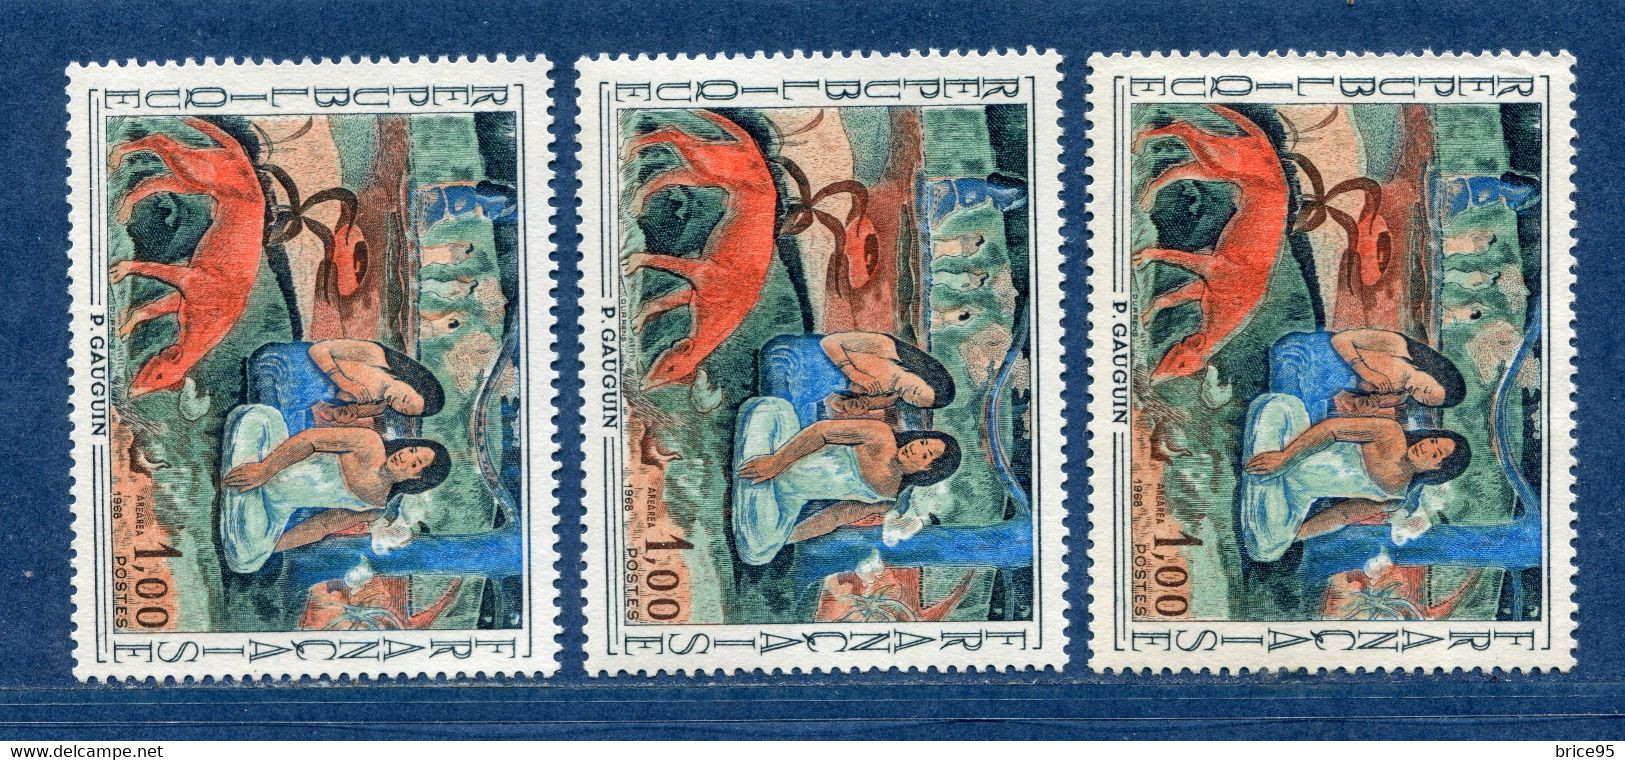 ⭐ France - Variété - YT N° 1568 - Couleurs - Pétouilles - Neuf Sans Charnière - 1968 ⭐ - Unused Stamps